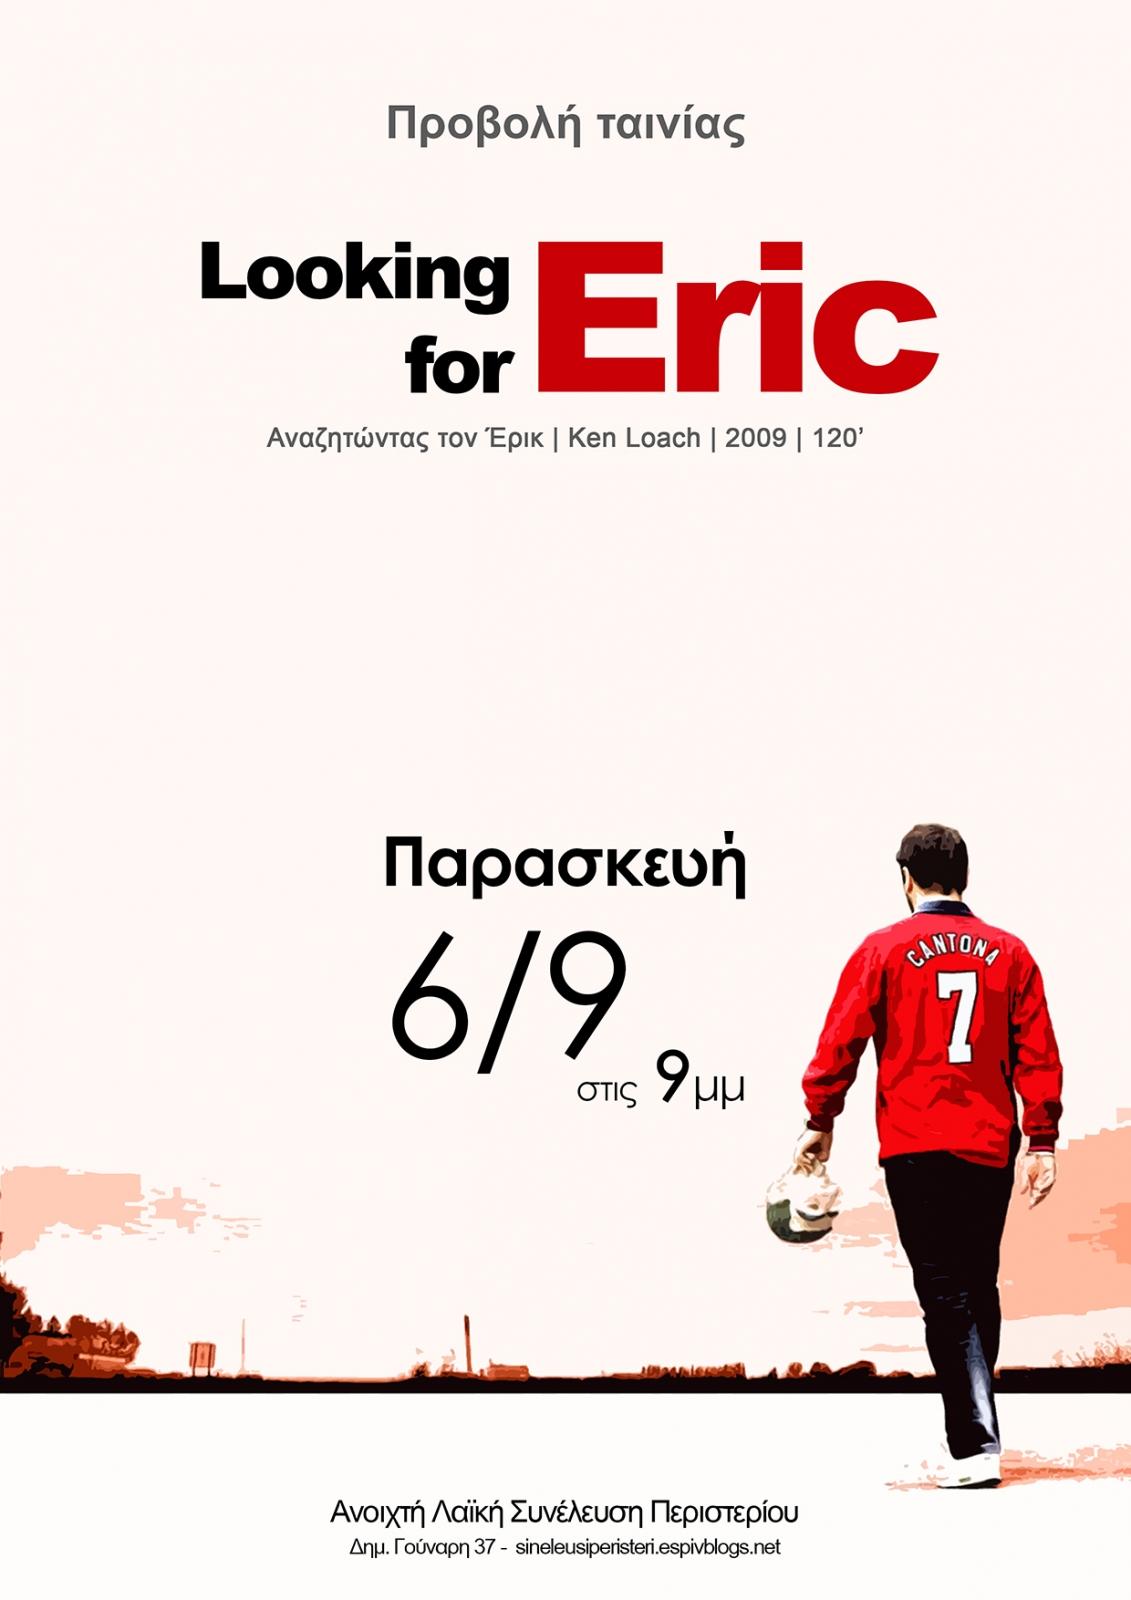 Περιστέρι: Προβολή ταινίας “Looking for Eric”